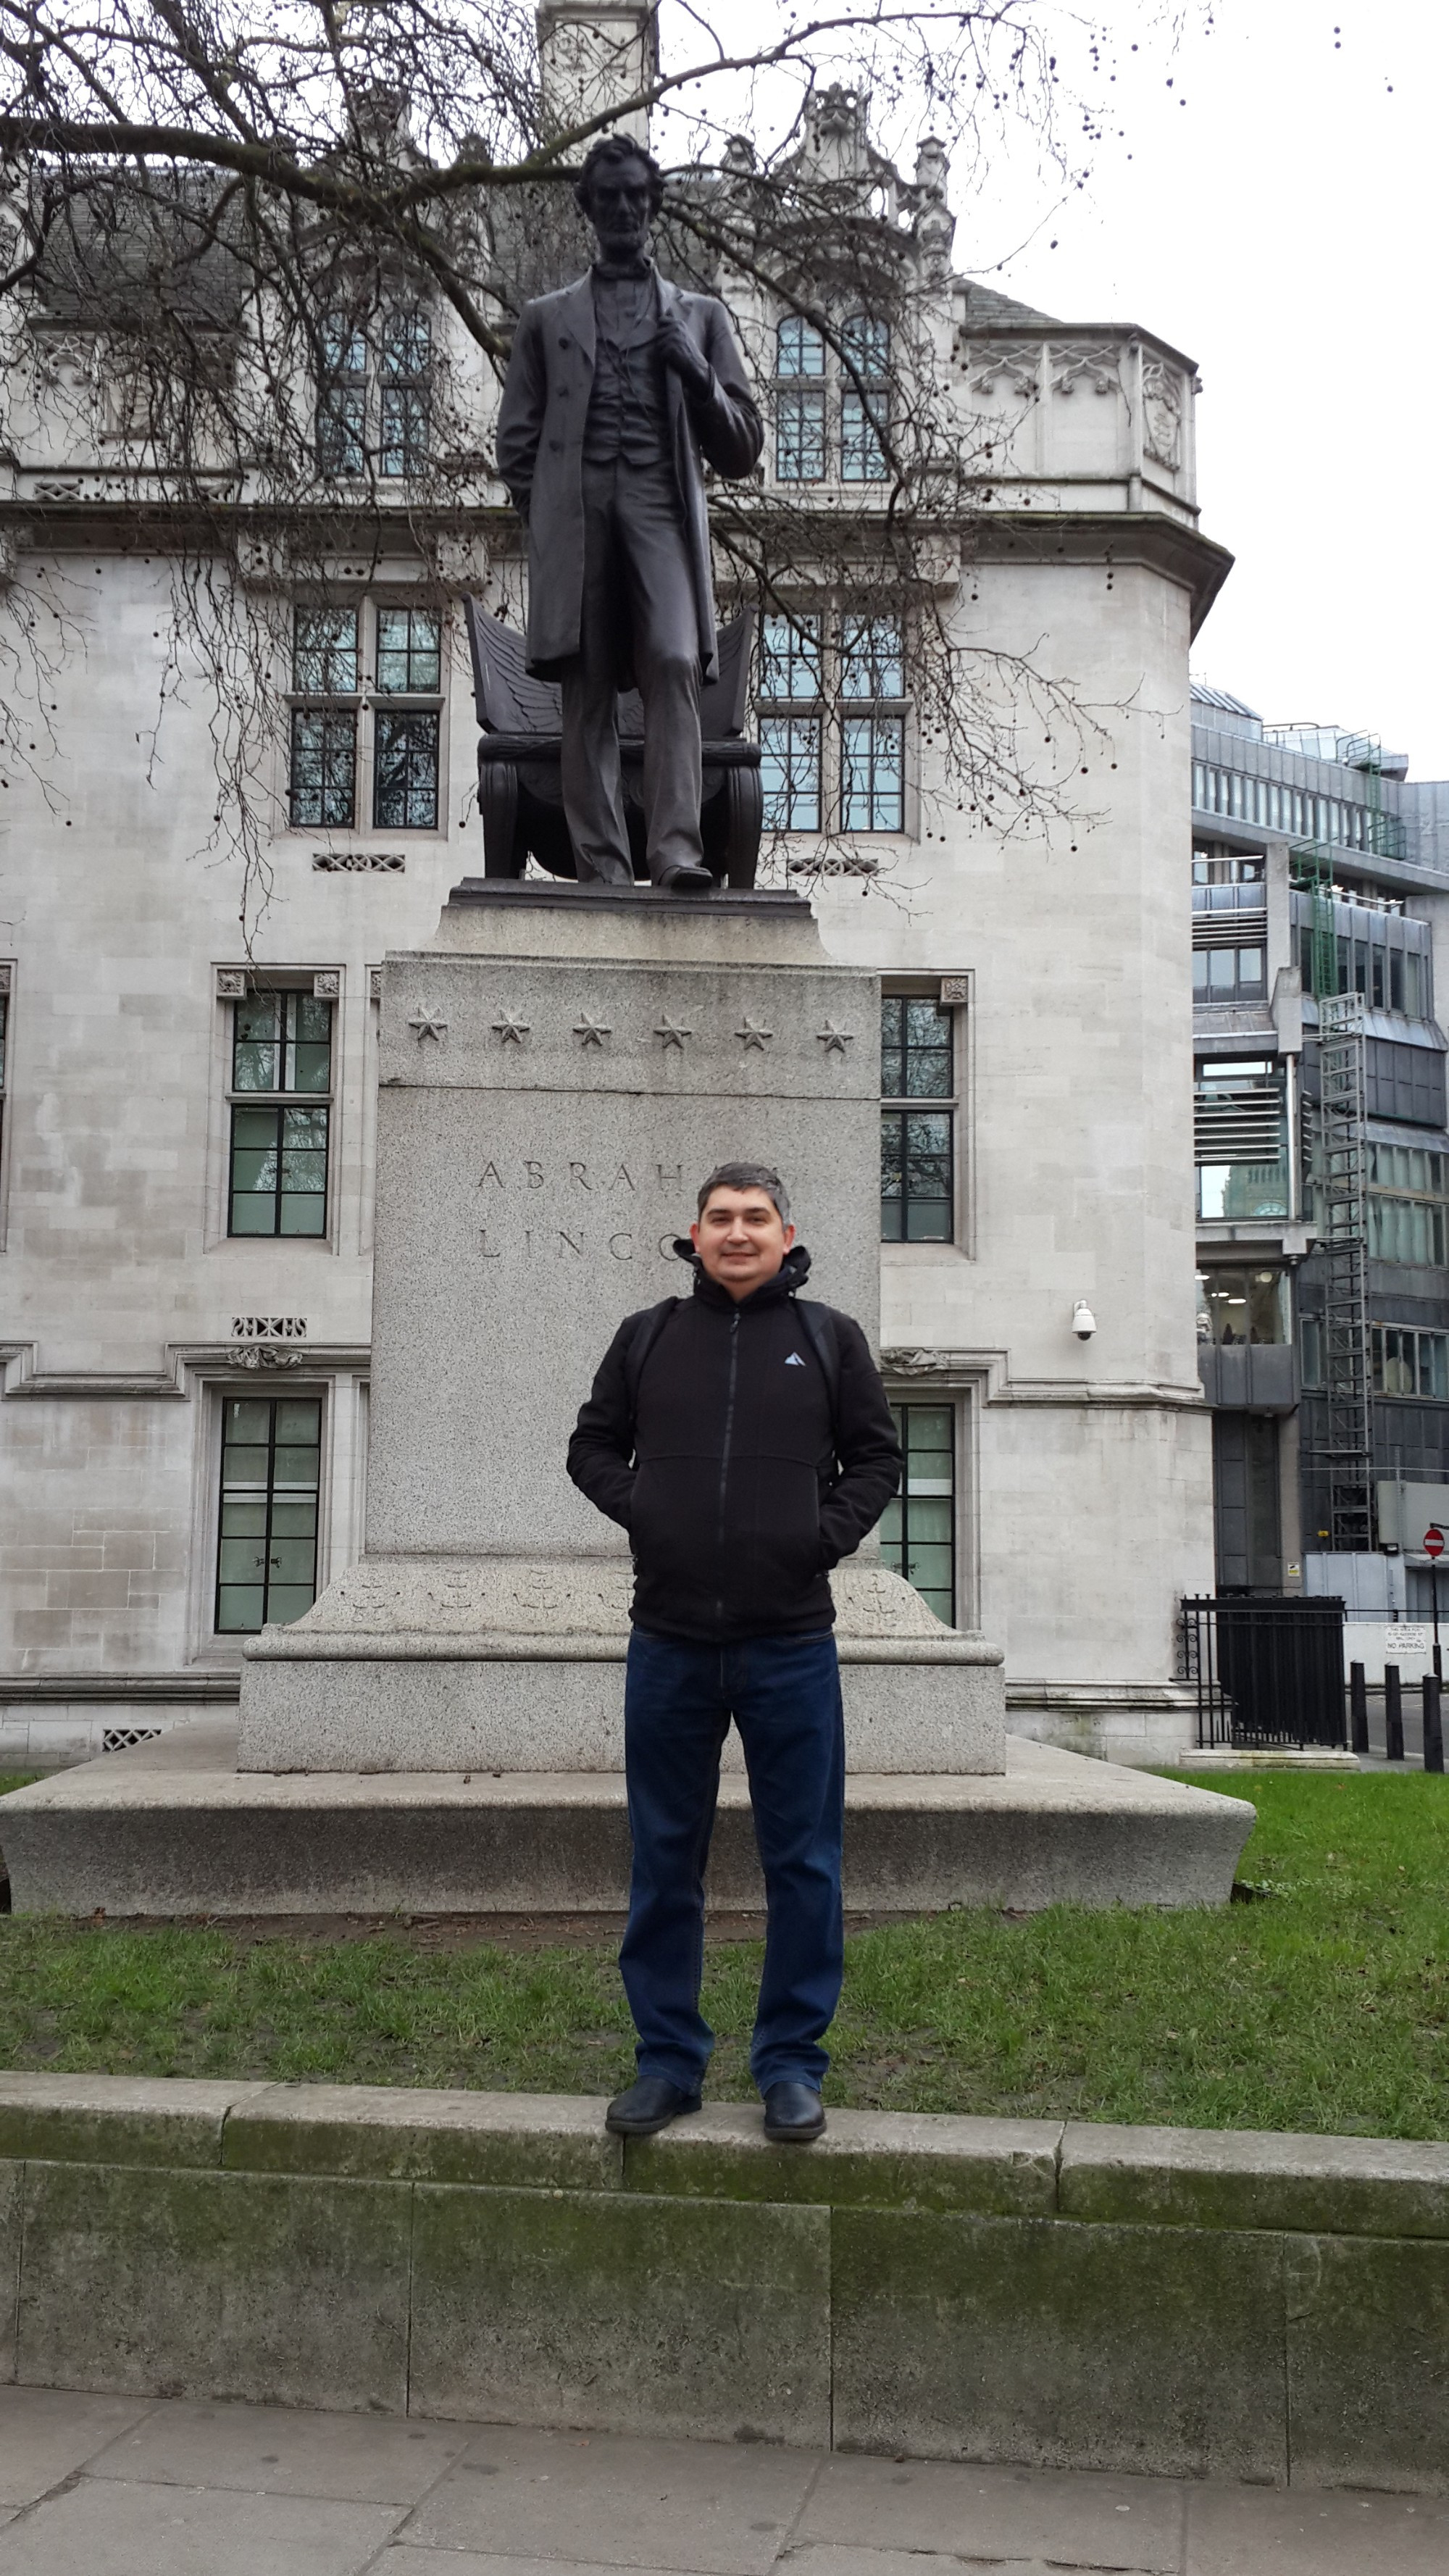 Лондон. Я у памятника Линкольну. (01.01.2016)